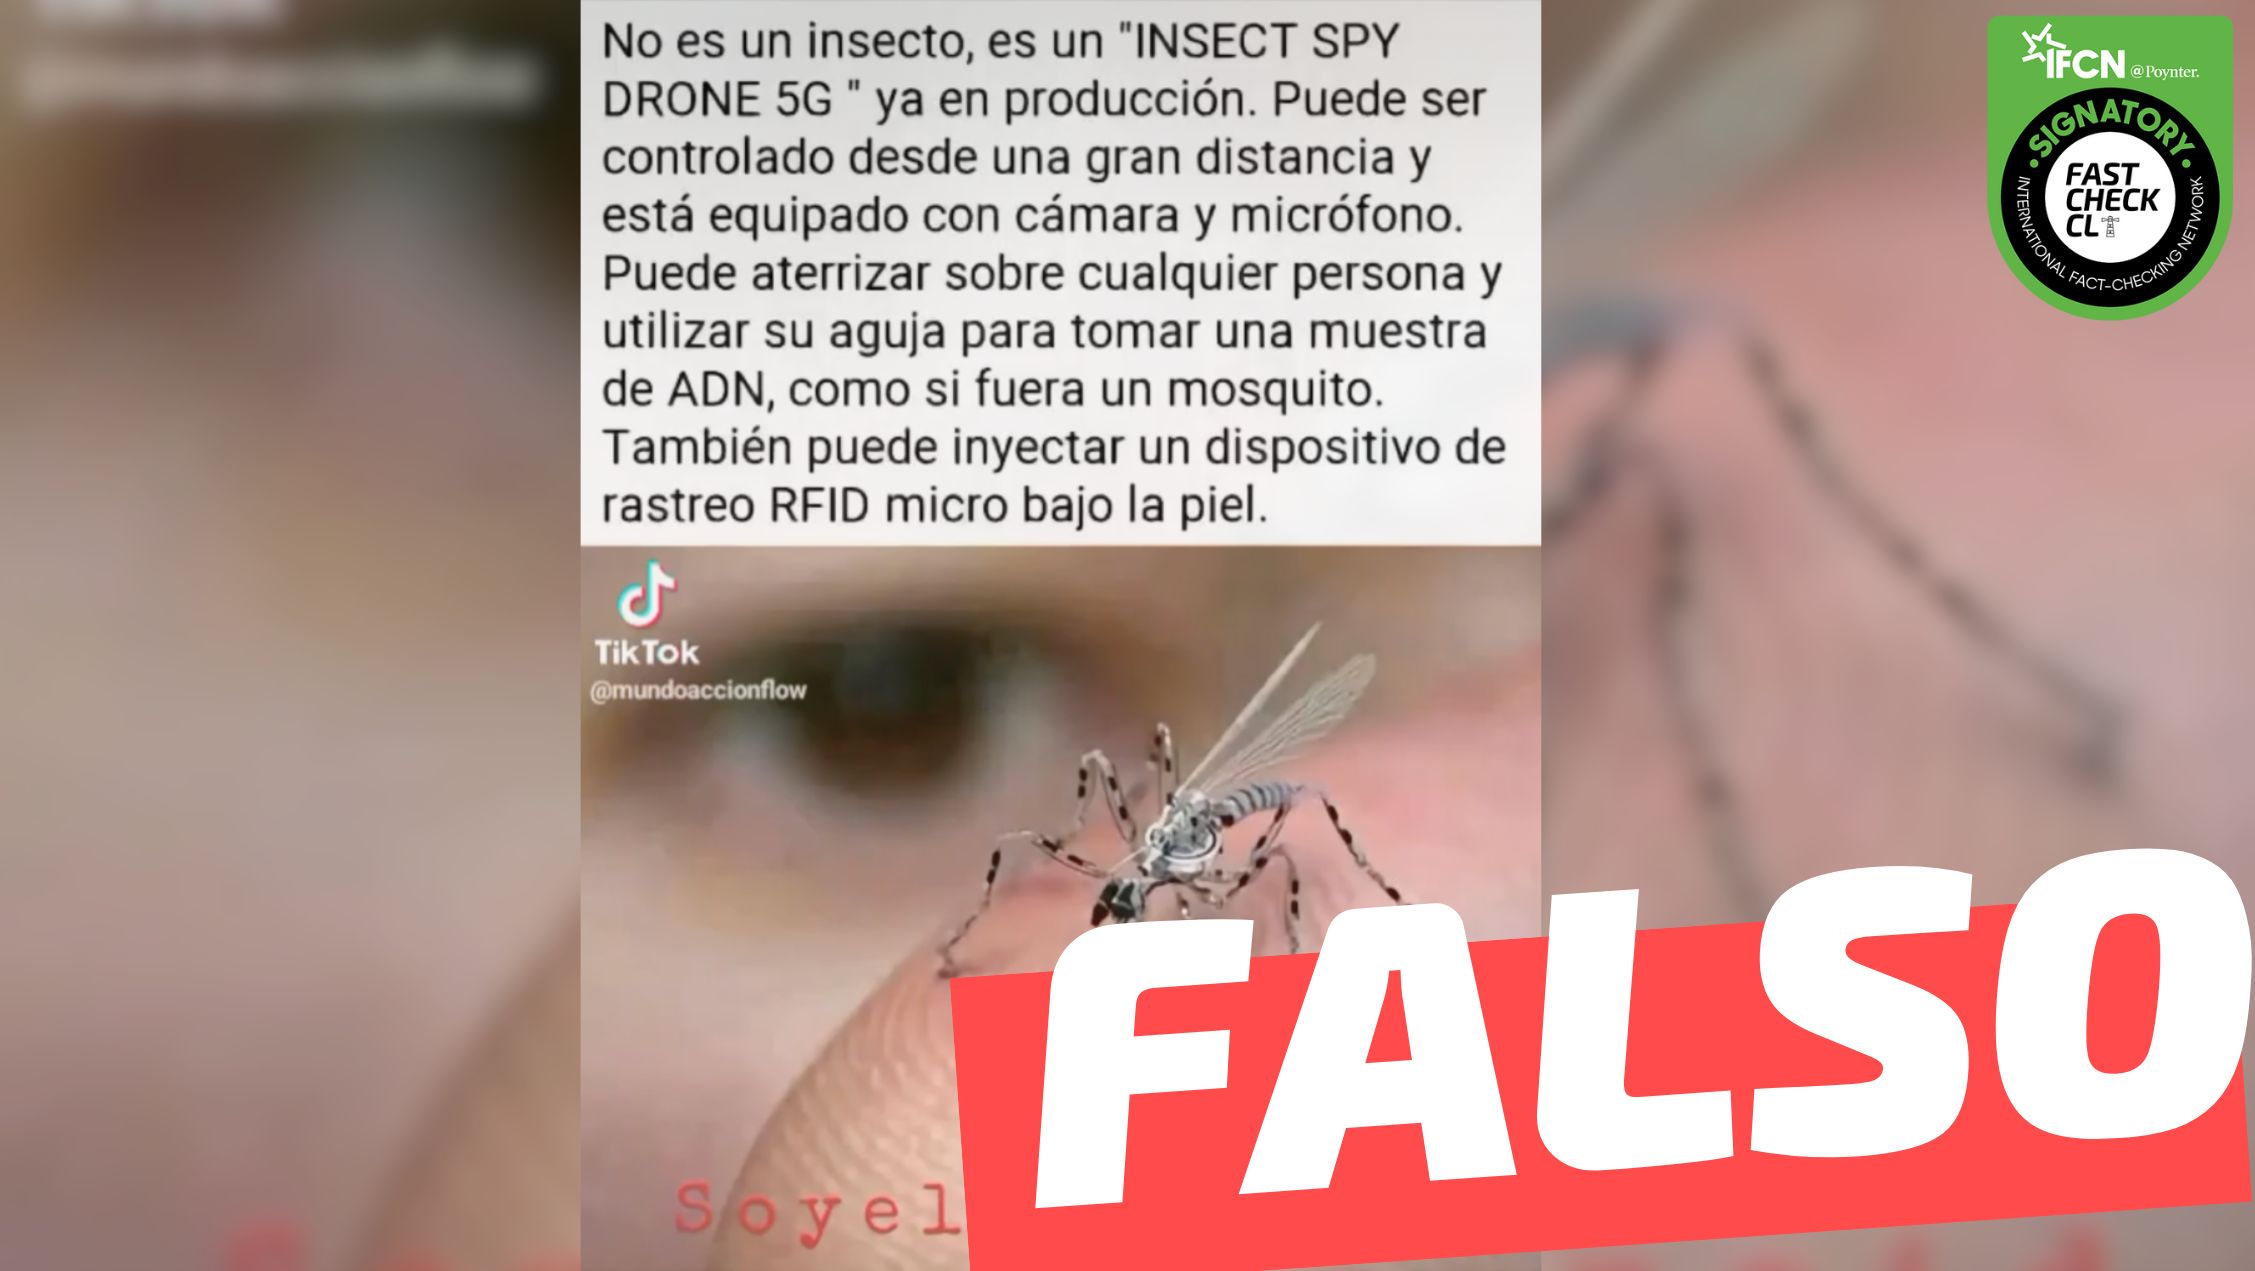 You are currently viewing (Imagen) “No es un insecto, es un ‘Insect Spy Drone 5G’ ya en producción”: #Falso